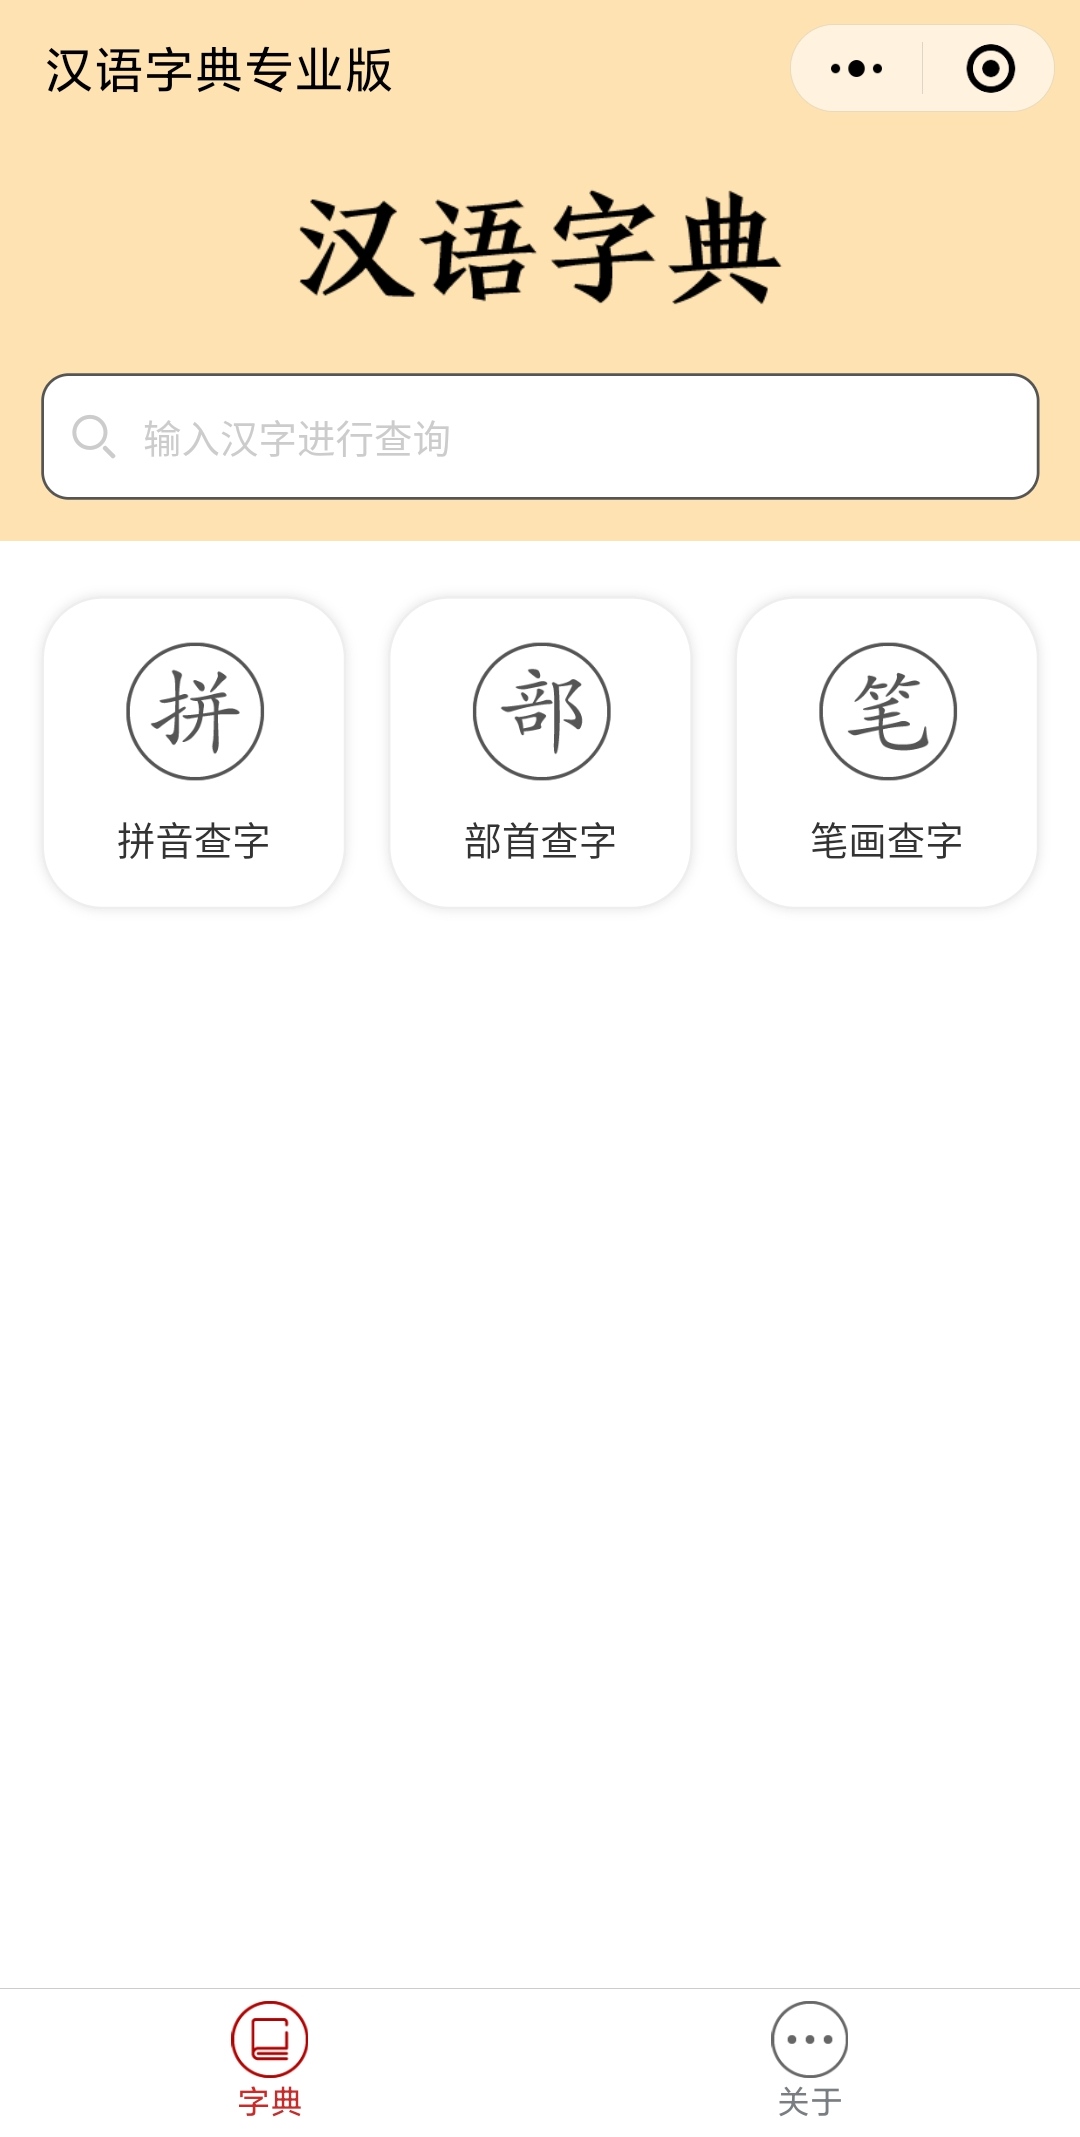 汉语字典专业版_汉语字典专业版小程序_汉语字典专业版微信小程序